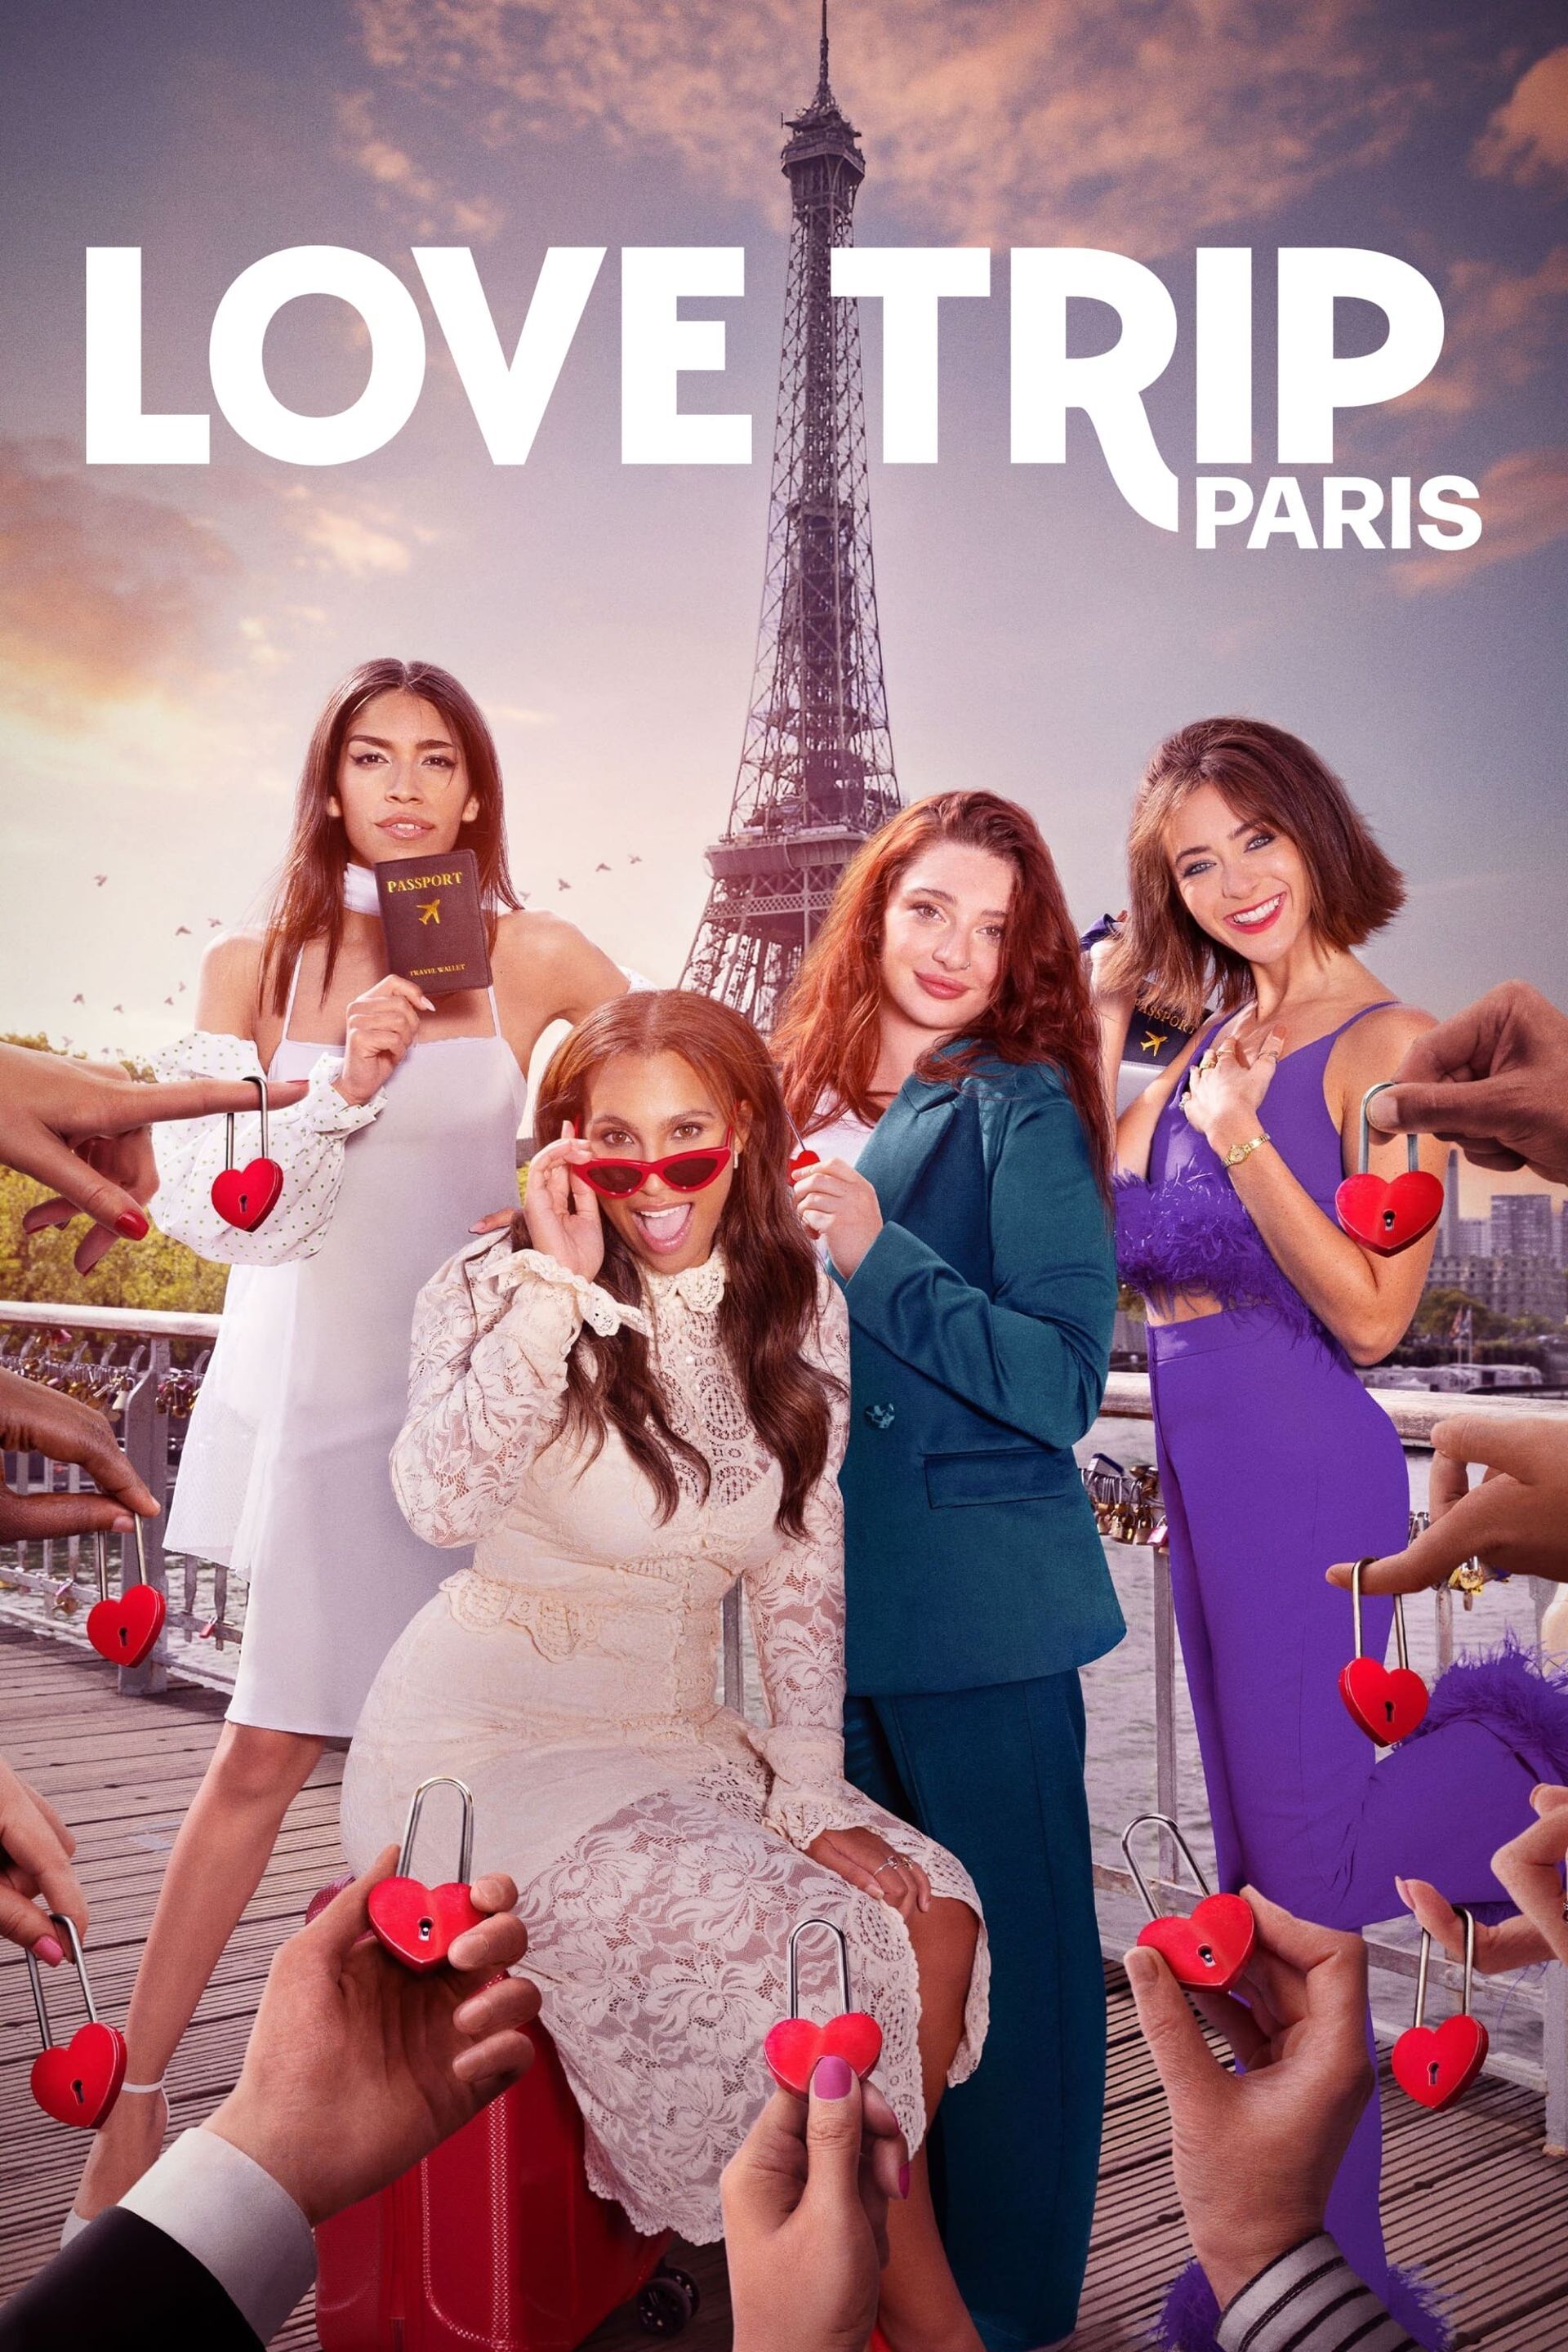 love trip paris episodes